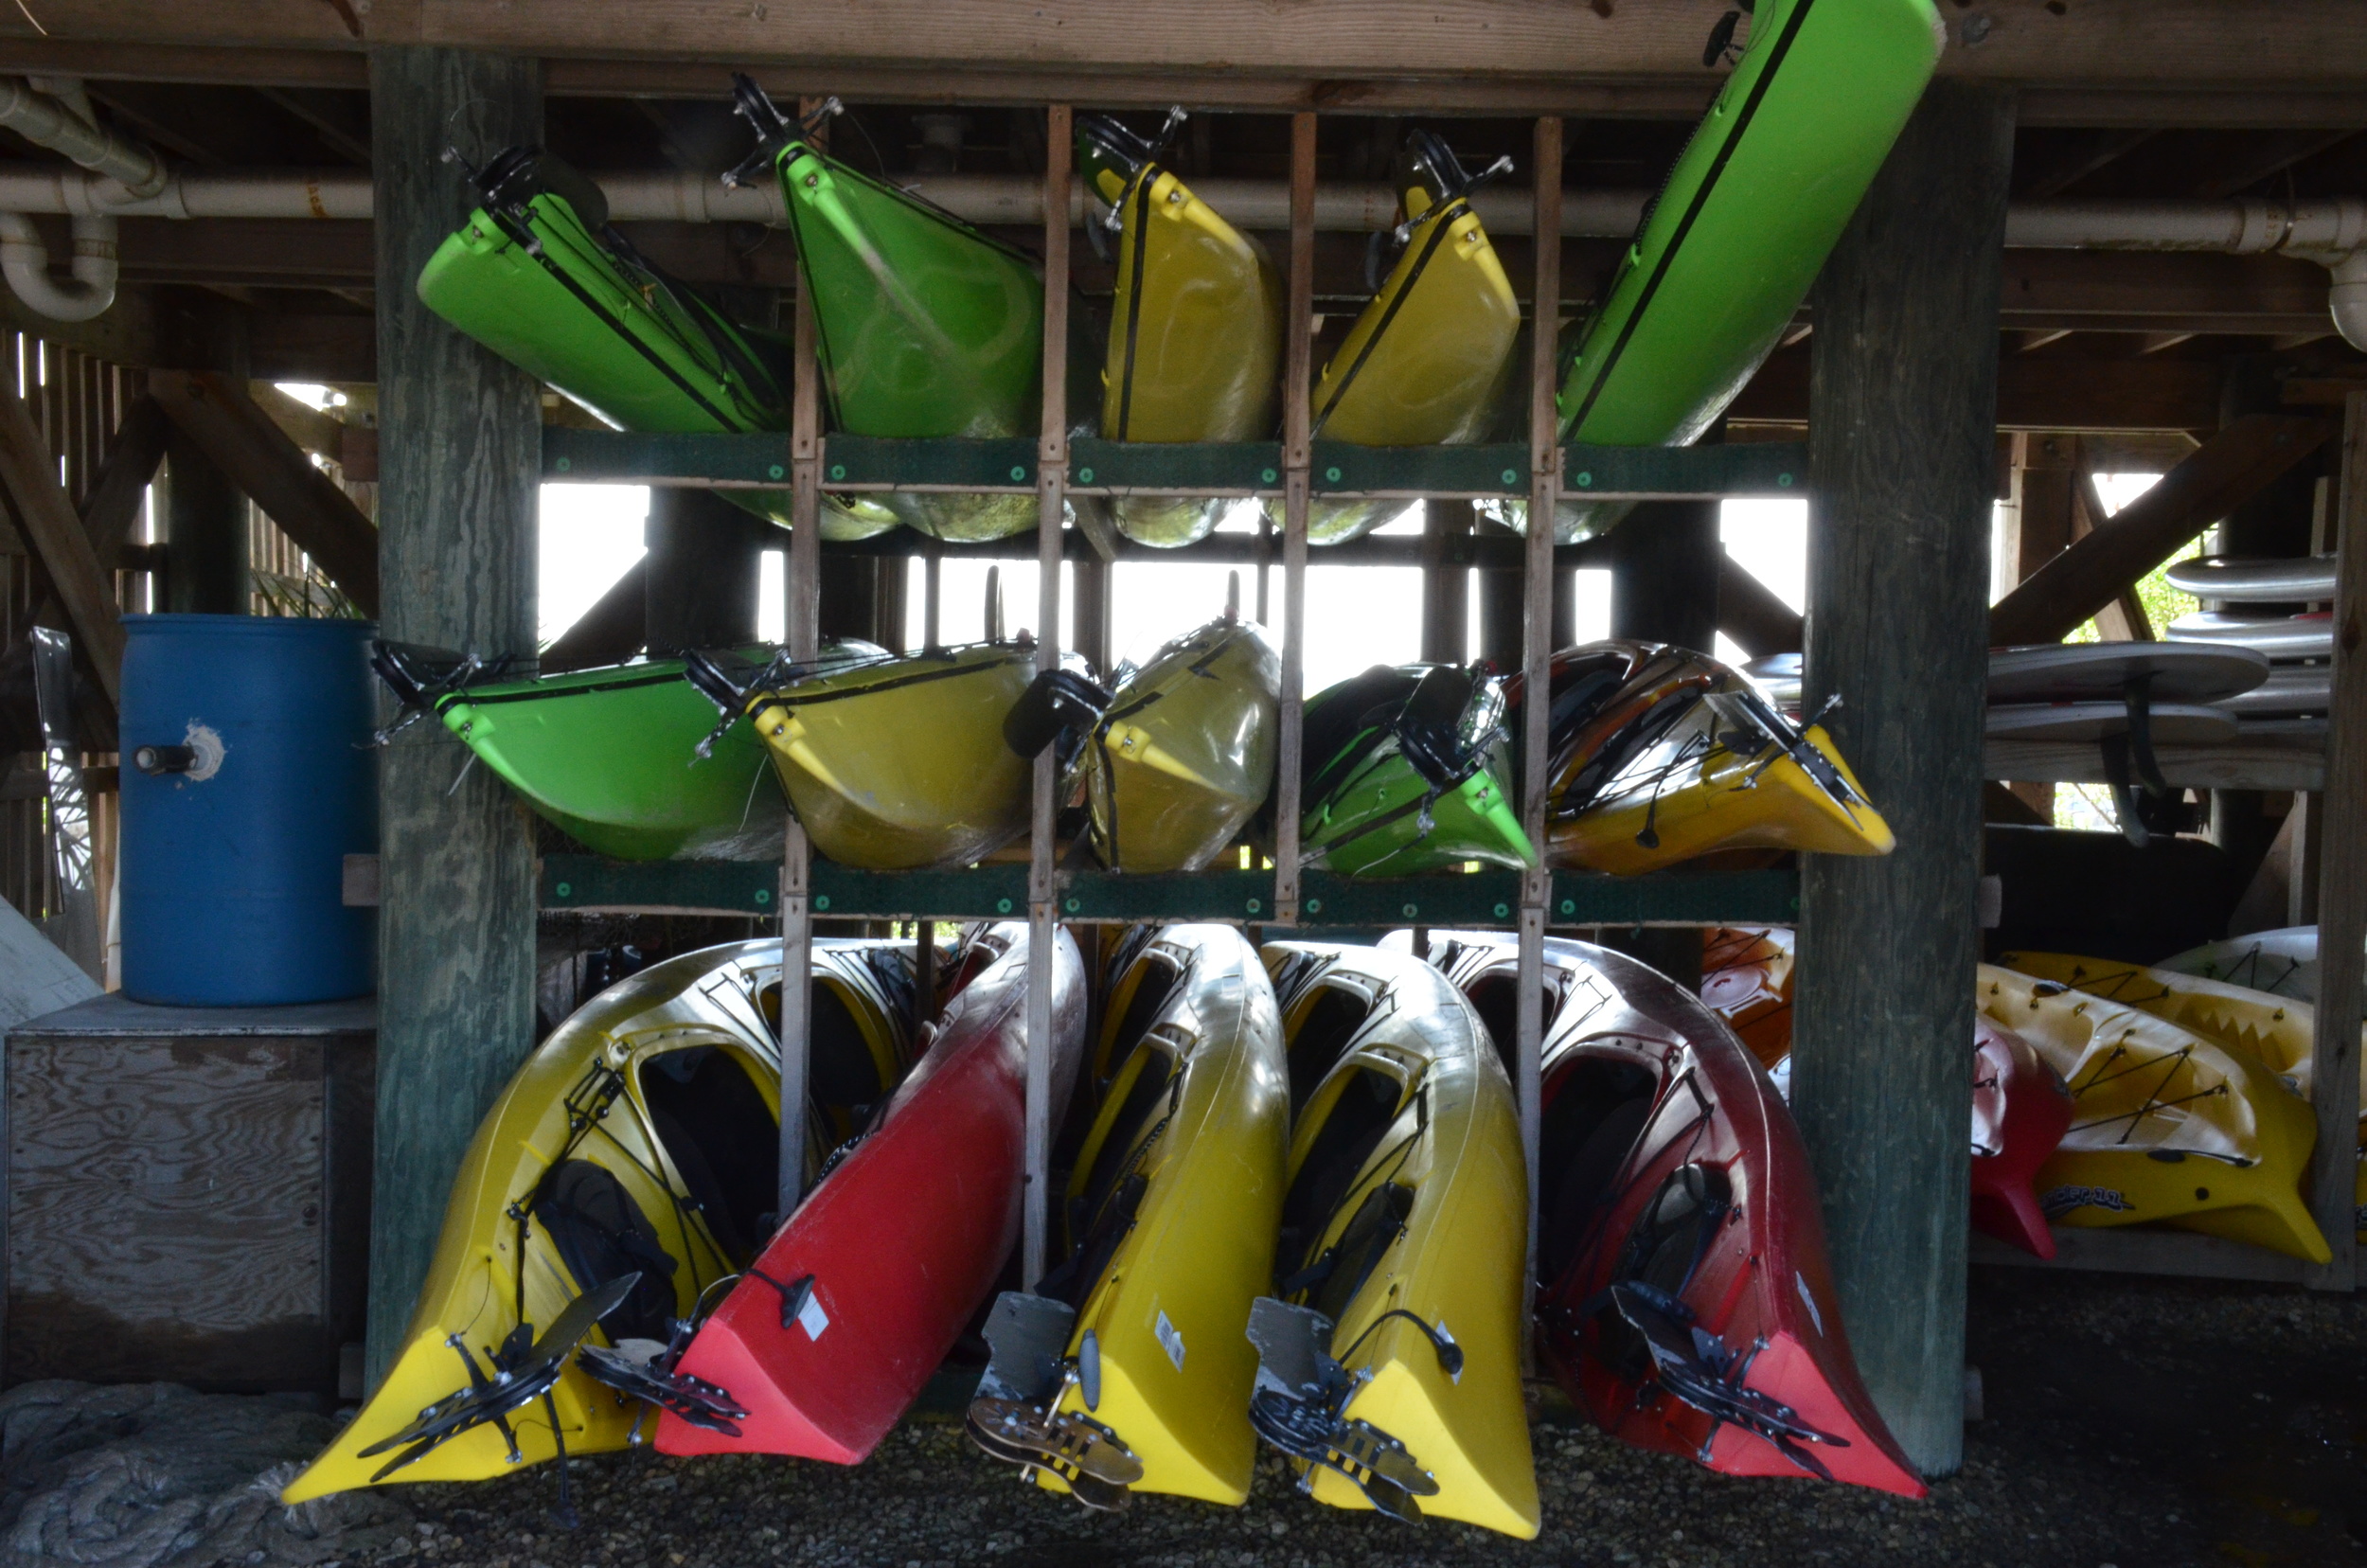  Kayaks at Folly Beach 